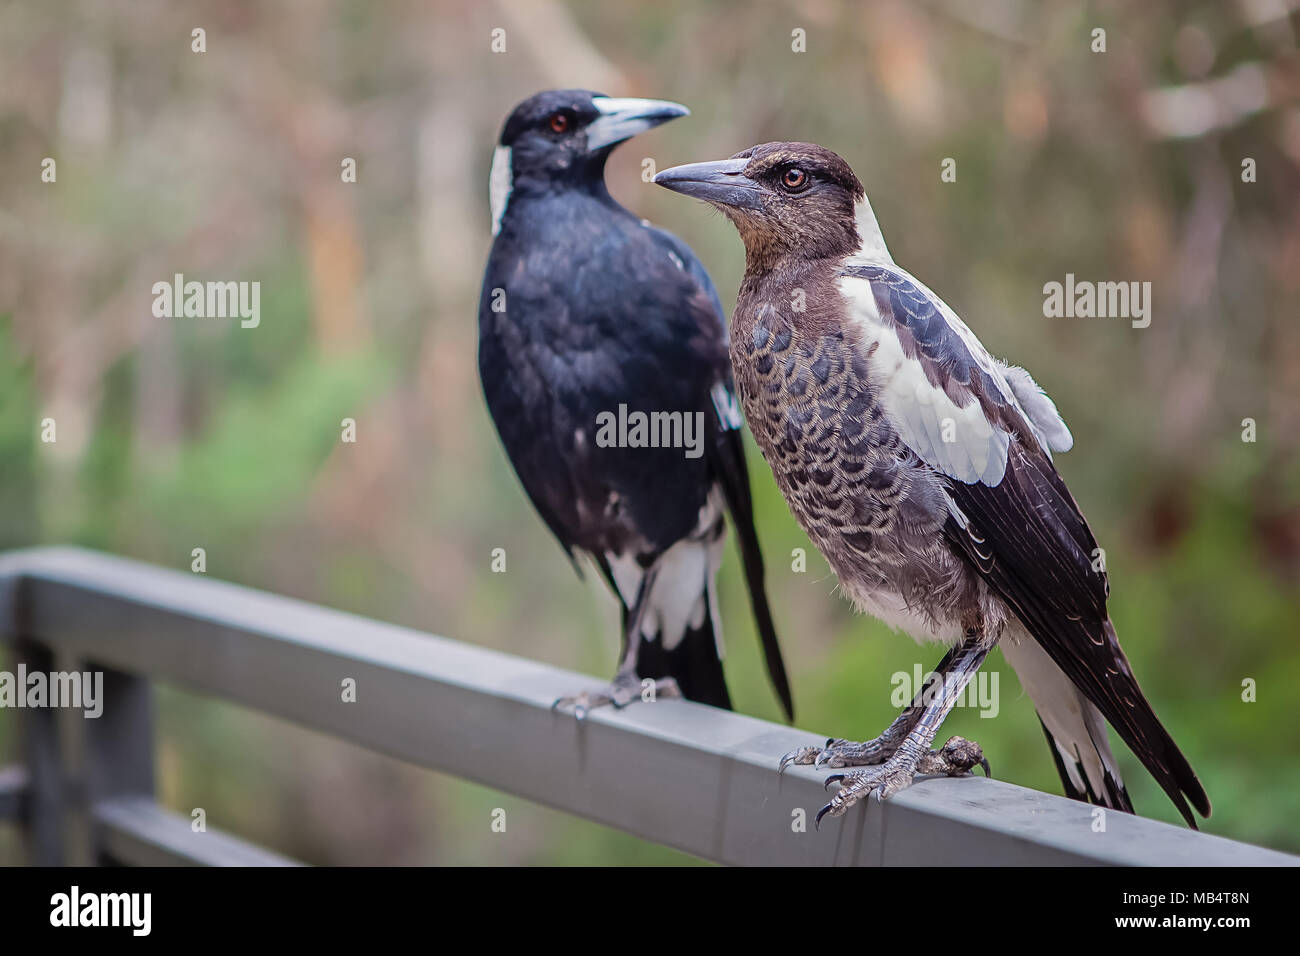 Close up adultes et de jeunes oiseaux pie un rail permanent balcon Banque D'Images